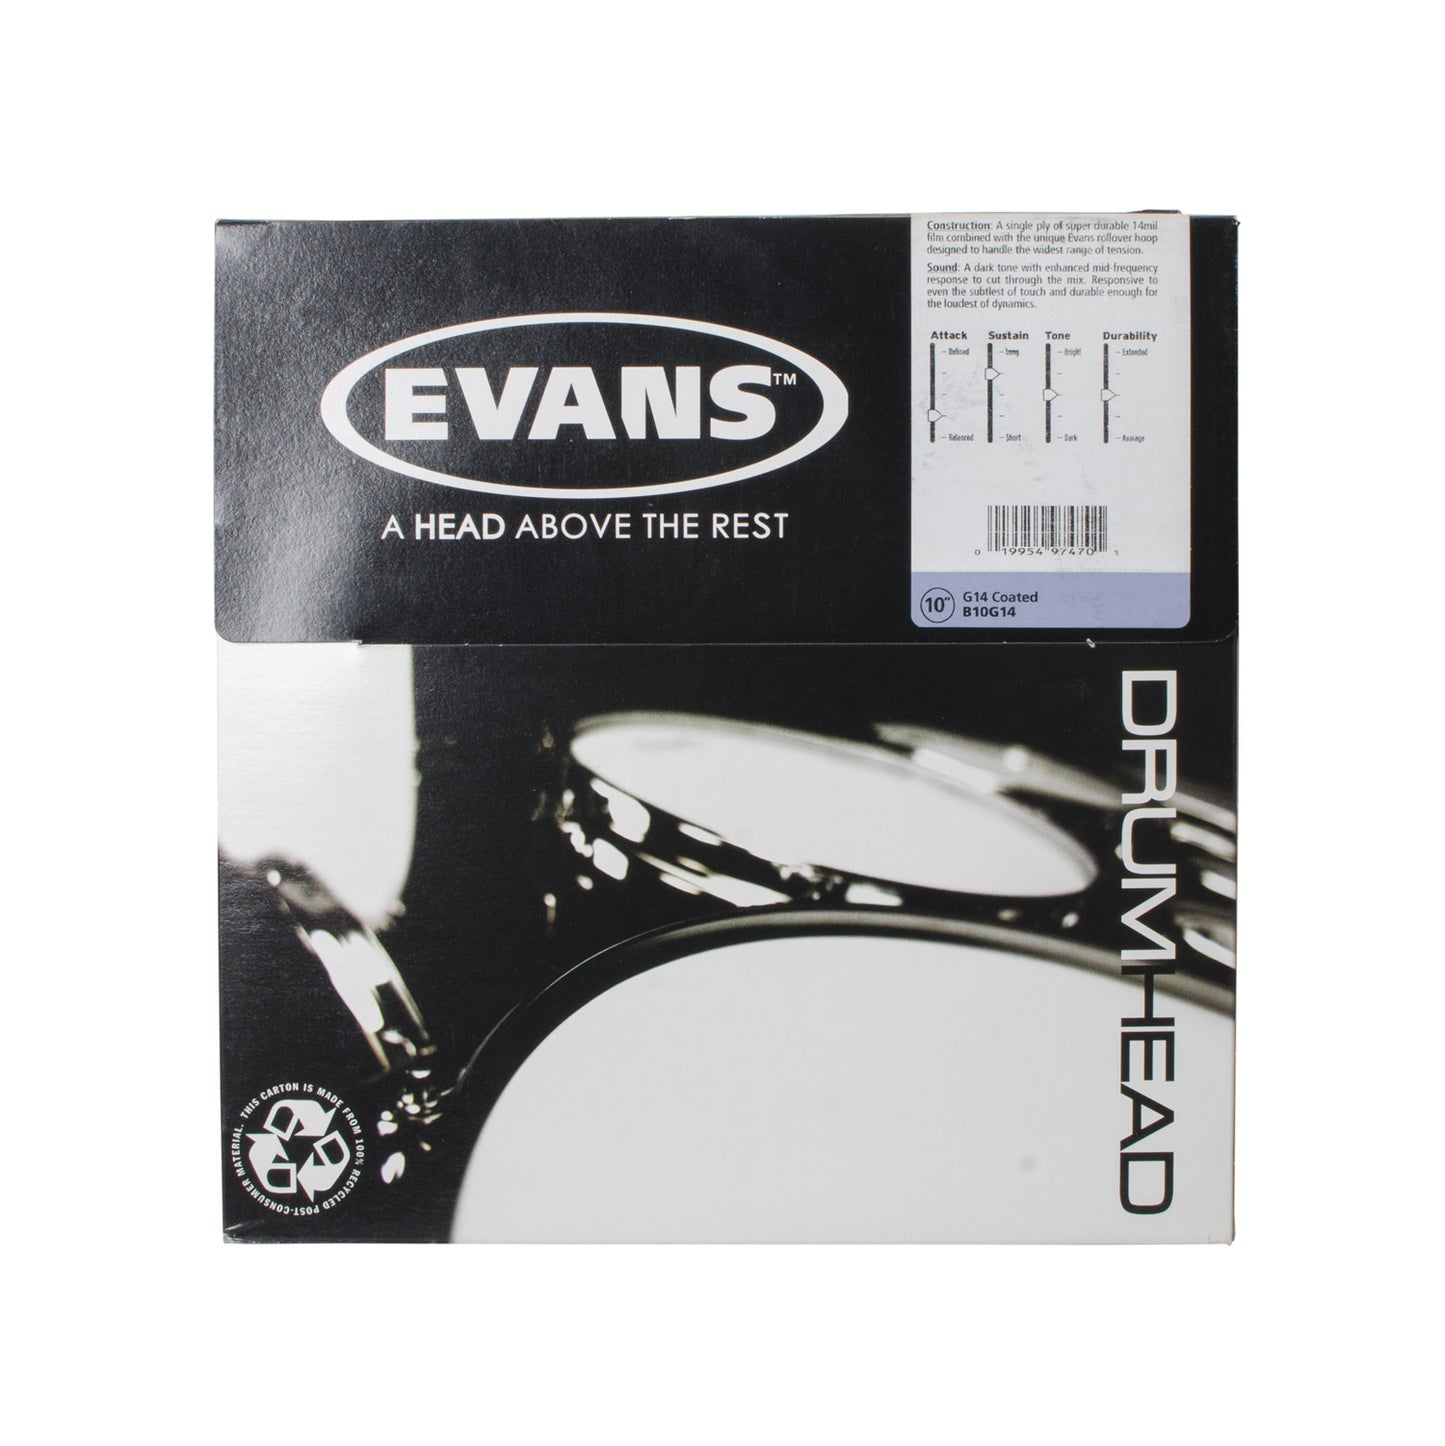 Evans B10G14 10" Coated G14 Drum Head